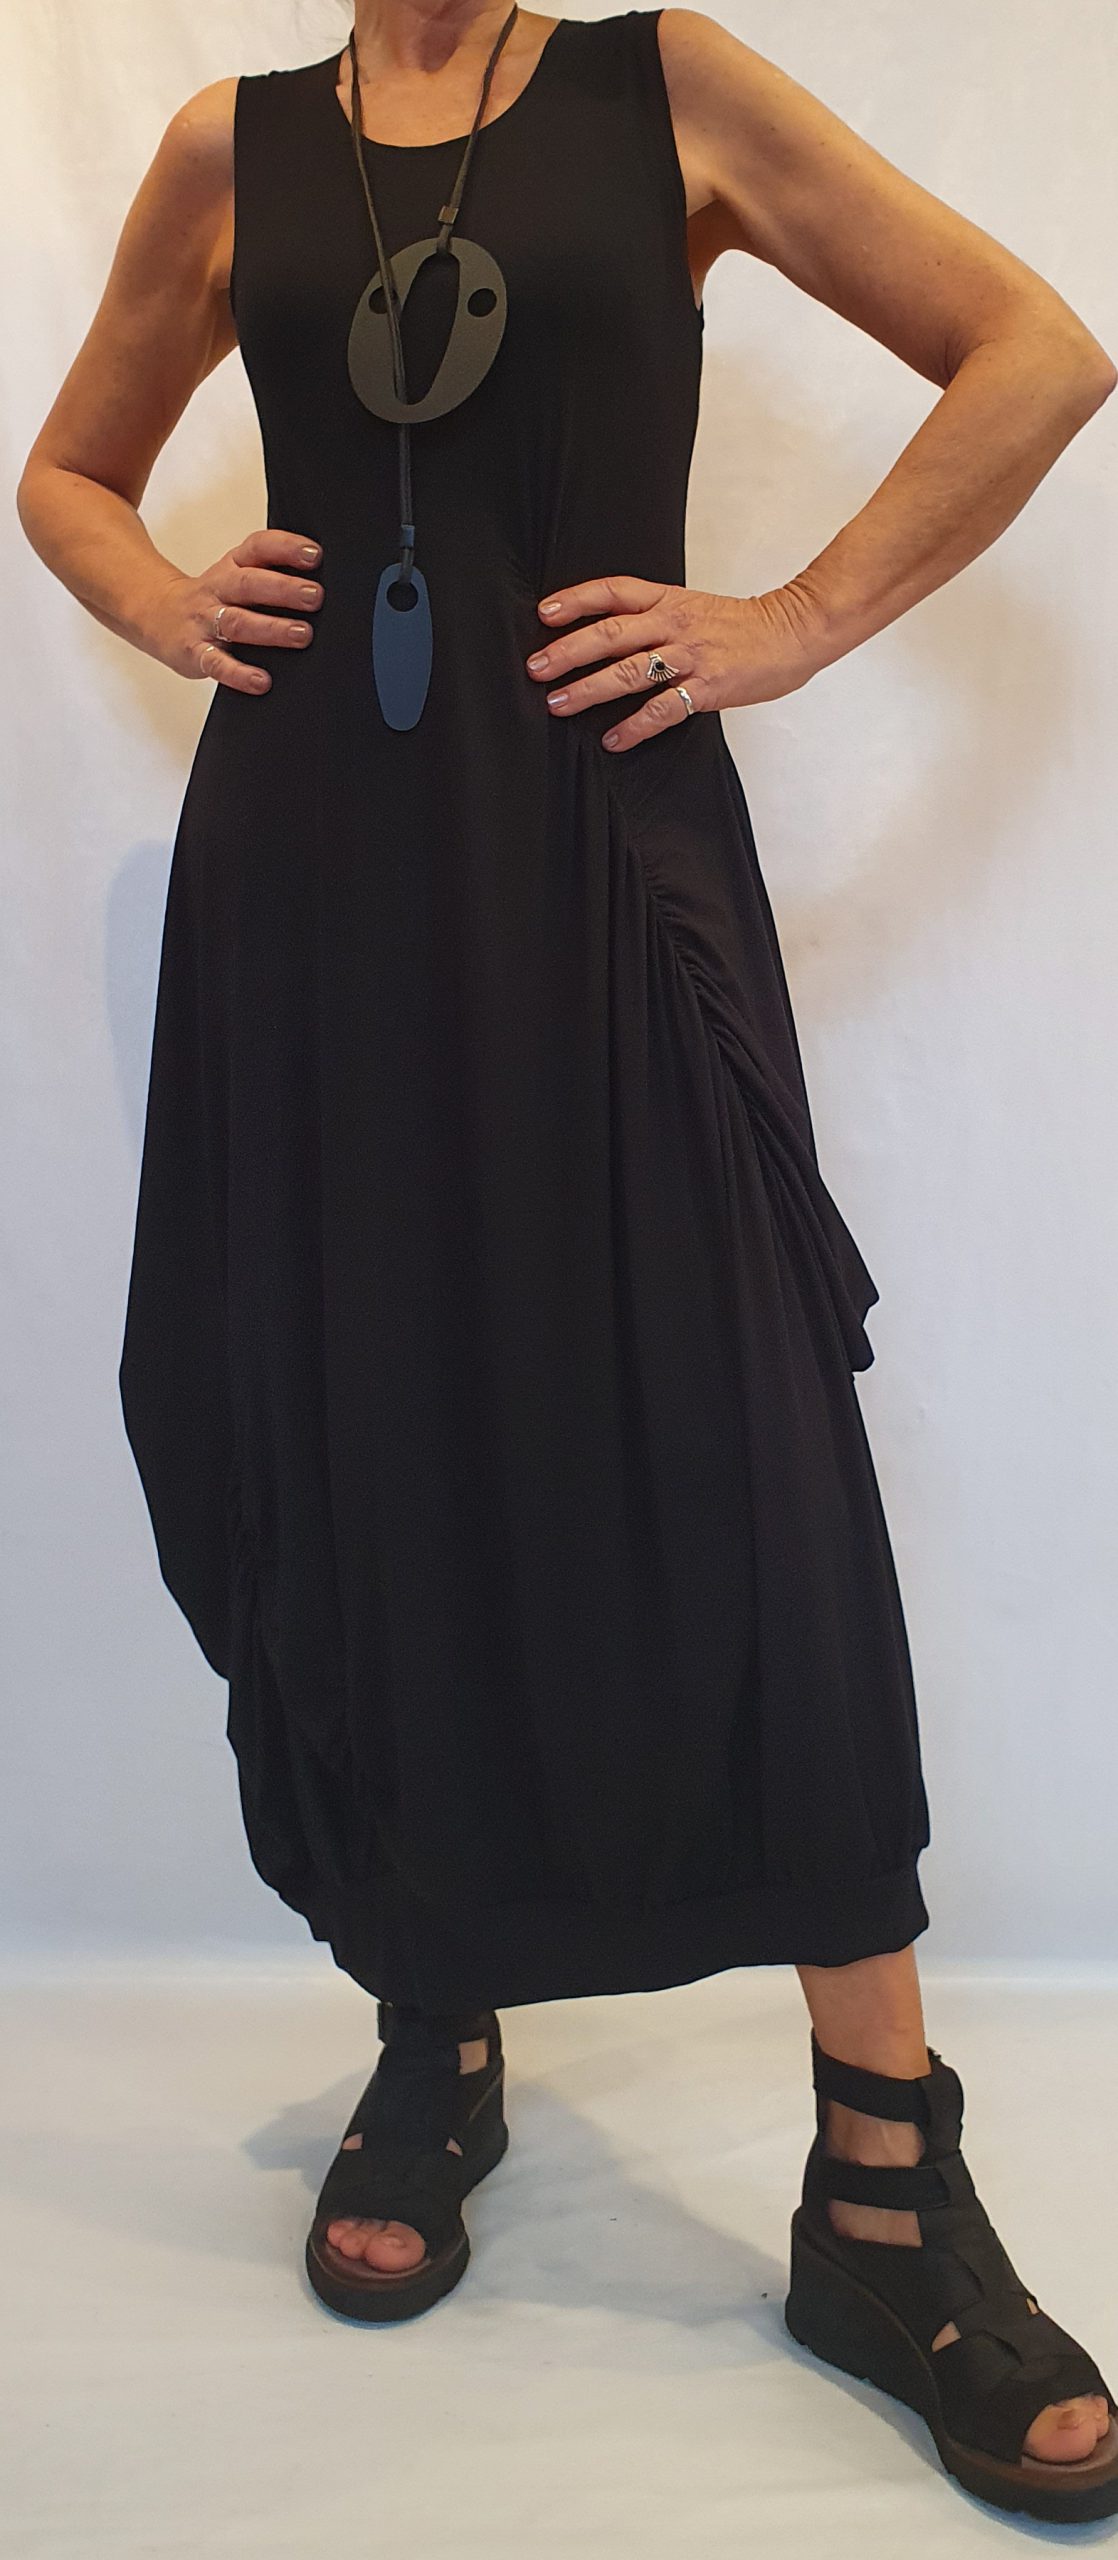 Een zekere Oprichter Mededogen Model "Britt" is een fantastische jurk - SJÀZZ Design